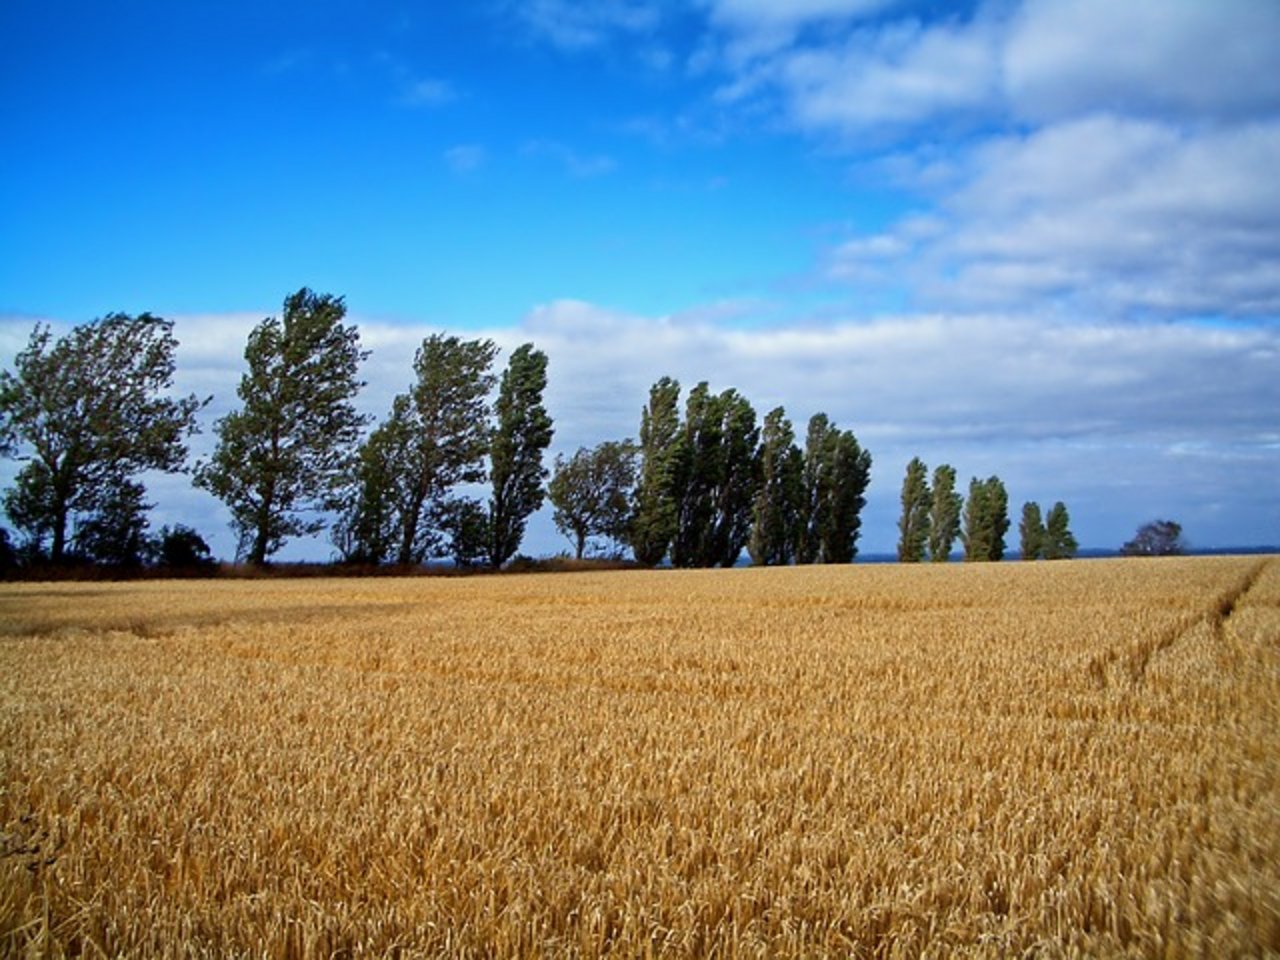 Die geringe Getreide- und Rapsernte 2018 soll mit Grund dafür sein, dass mehr Bauern Konkurs gingen. (Symbolbild pixabay)